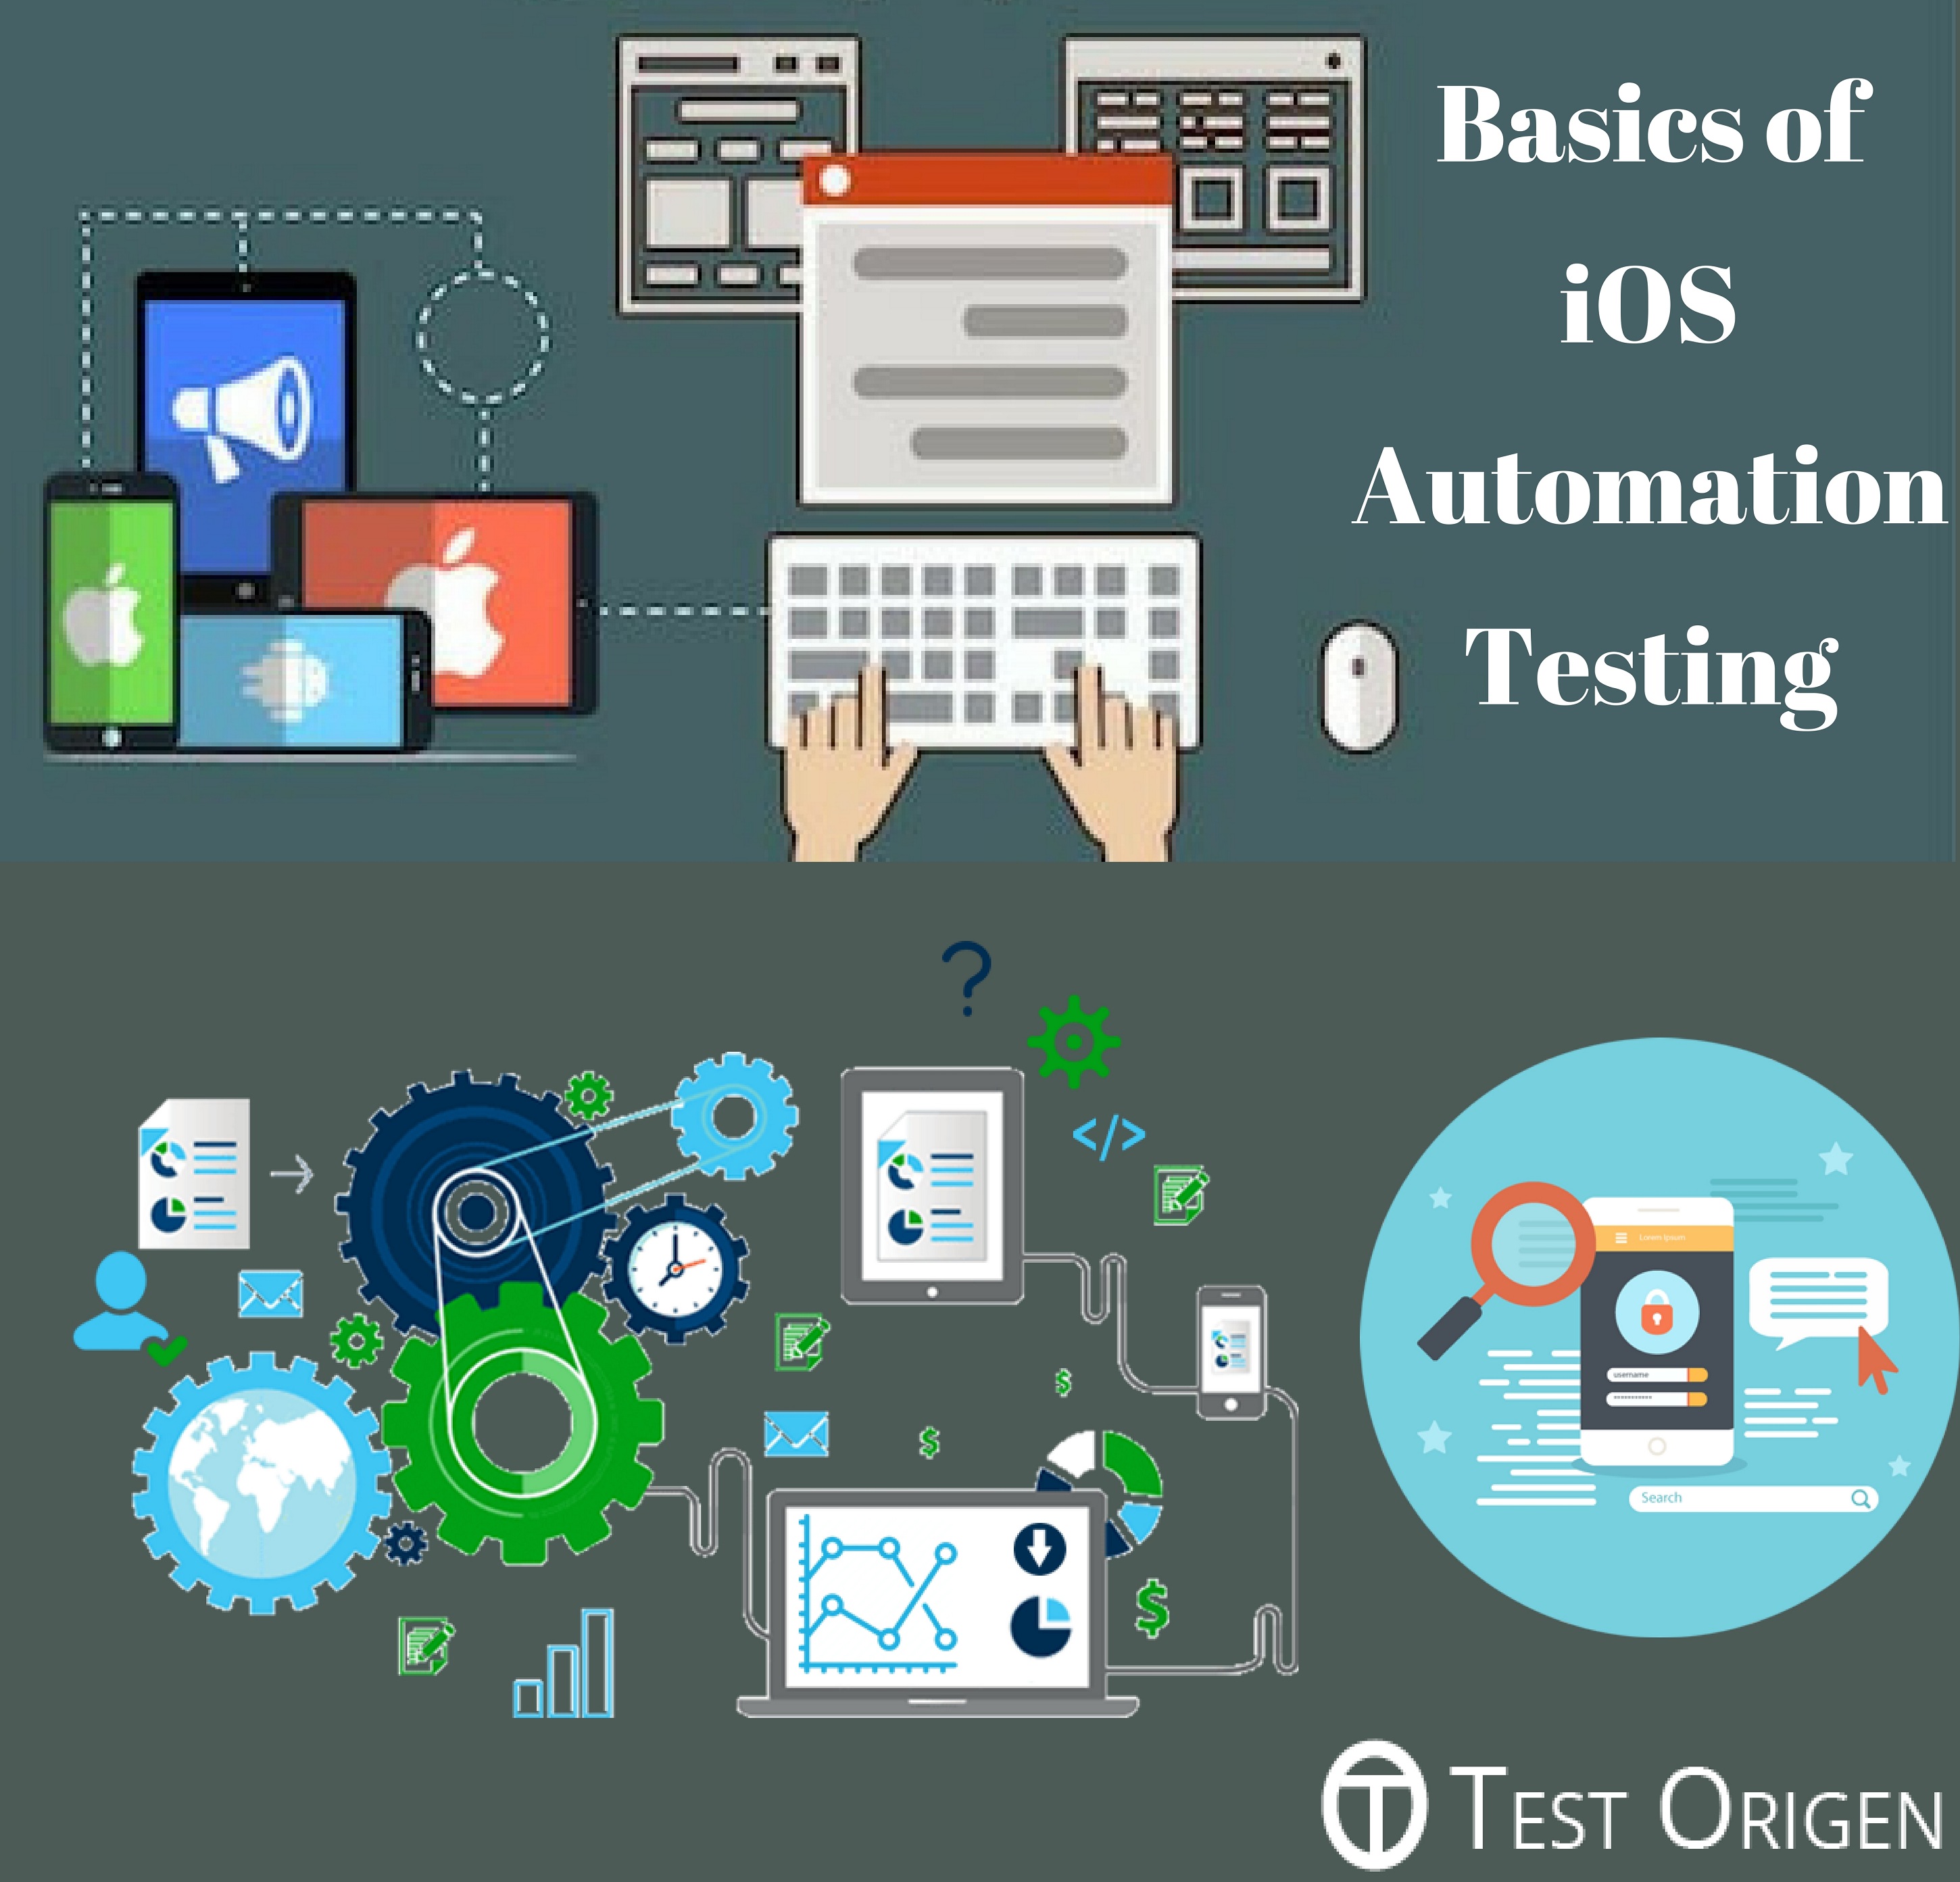 Basics of iOS Automation Testing